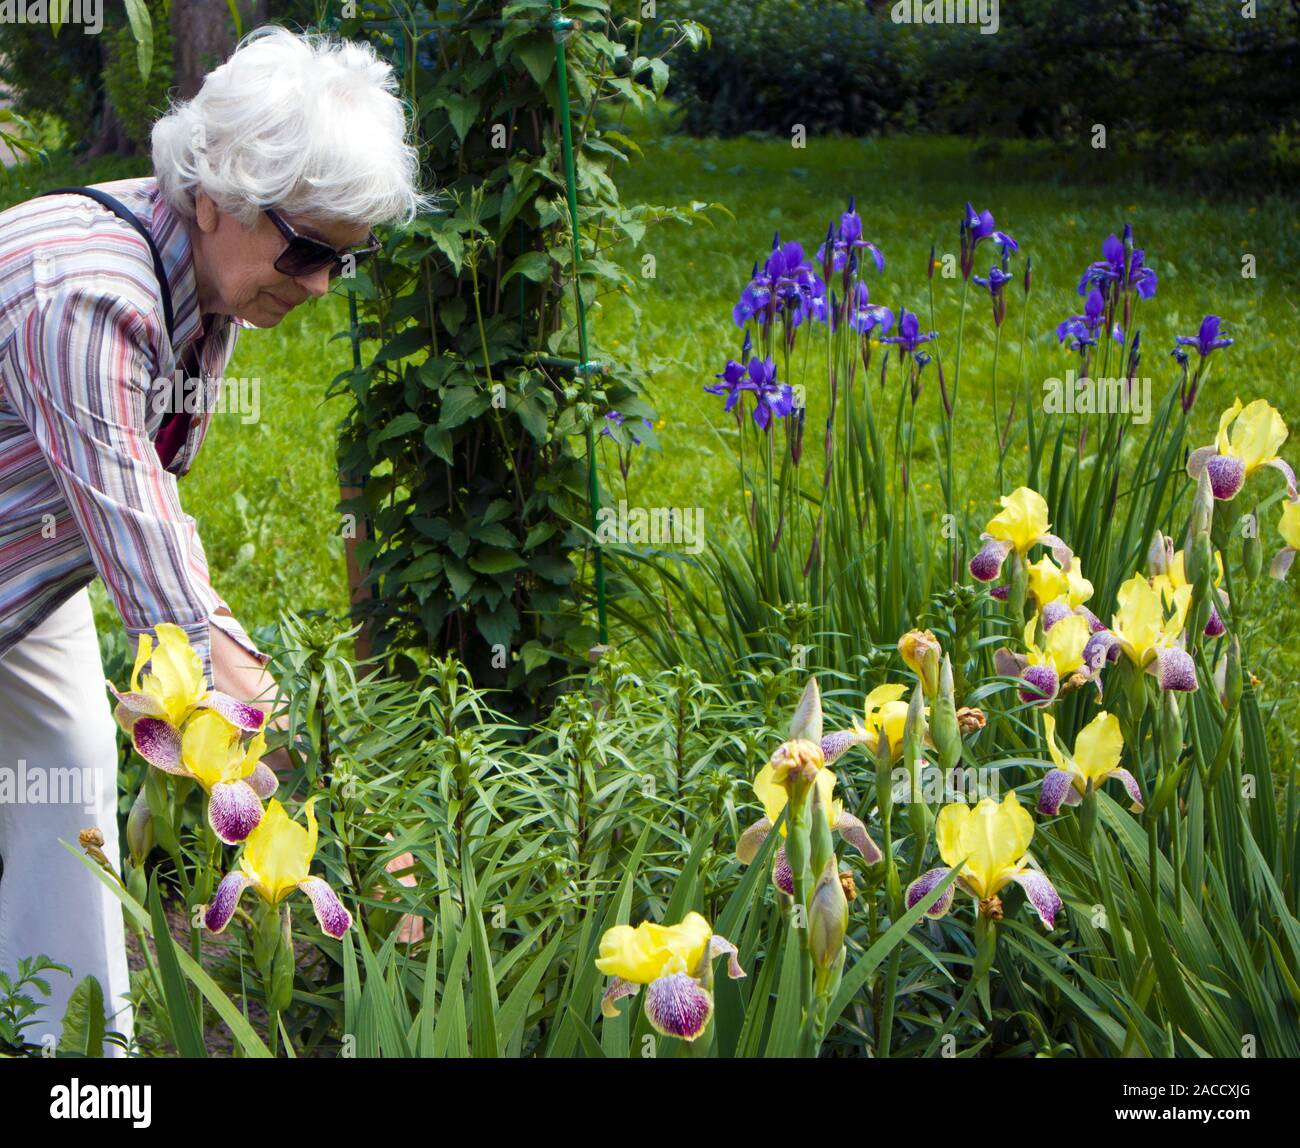 Personnes âgées belle femme aux cheveux gris avec une mauvaise vision s'occupe d'iris fleurs dans son jardin Banque D'Images